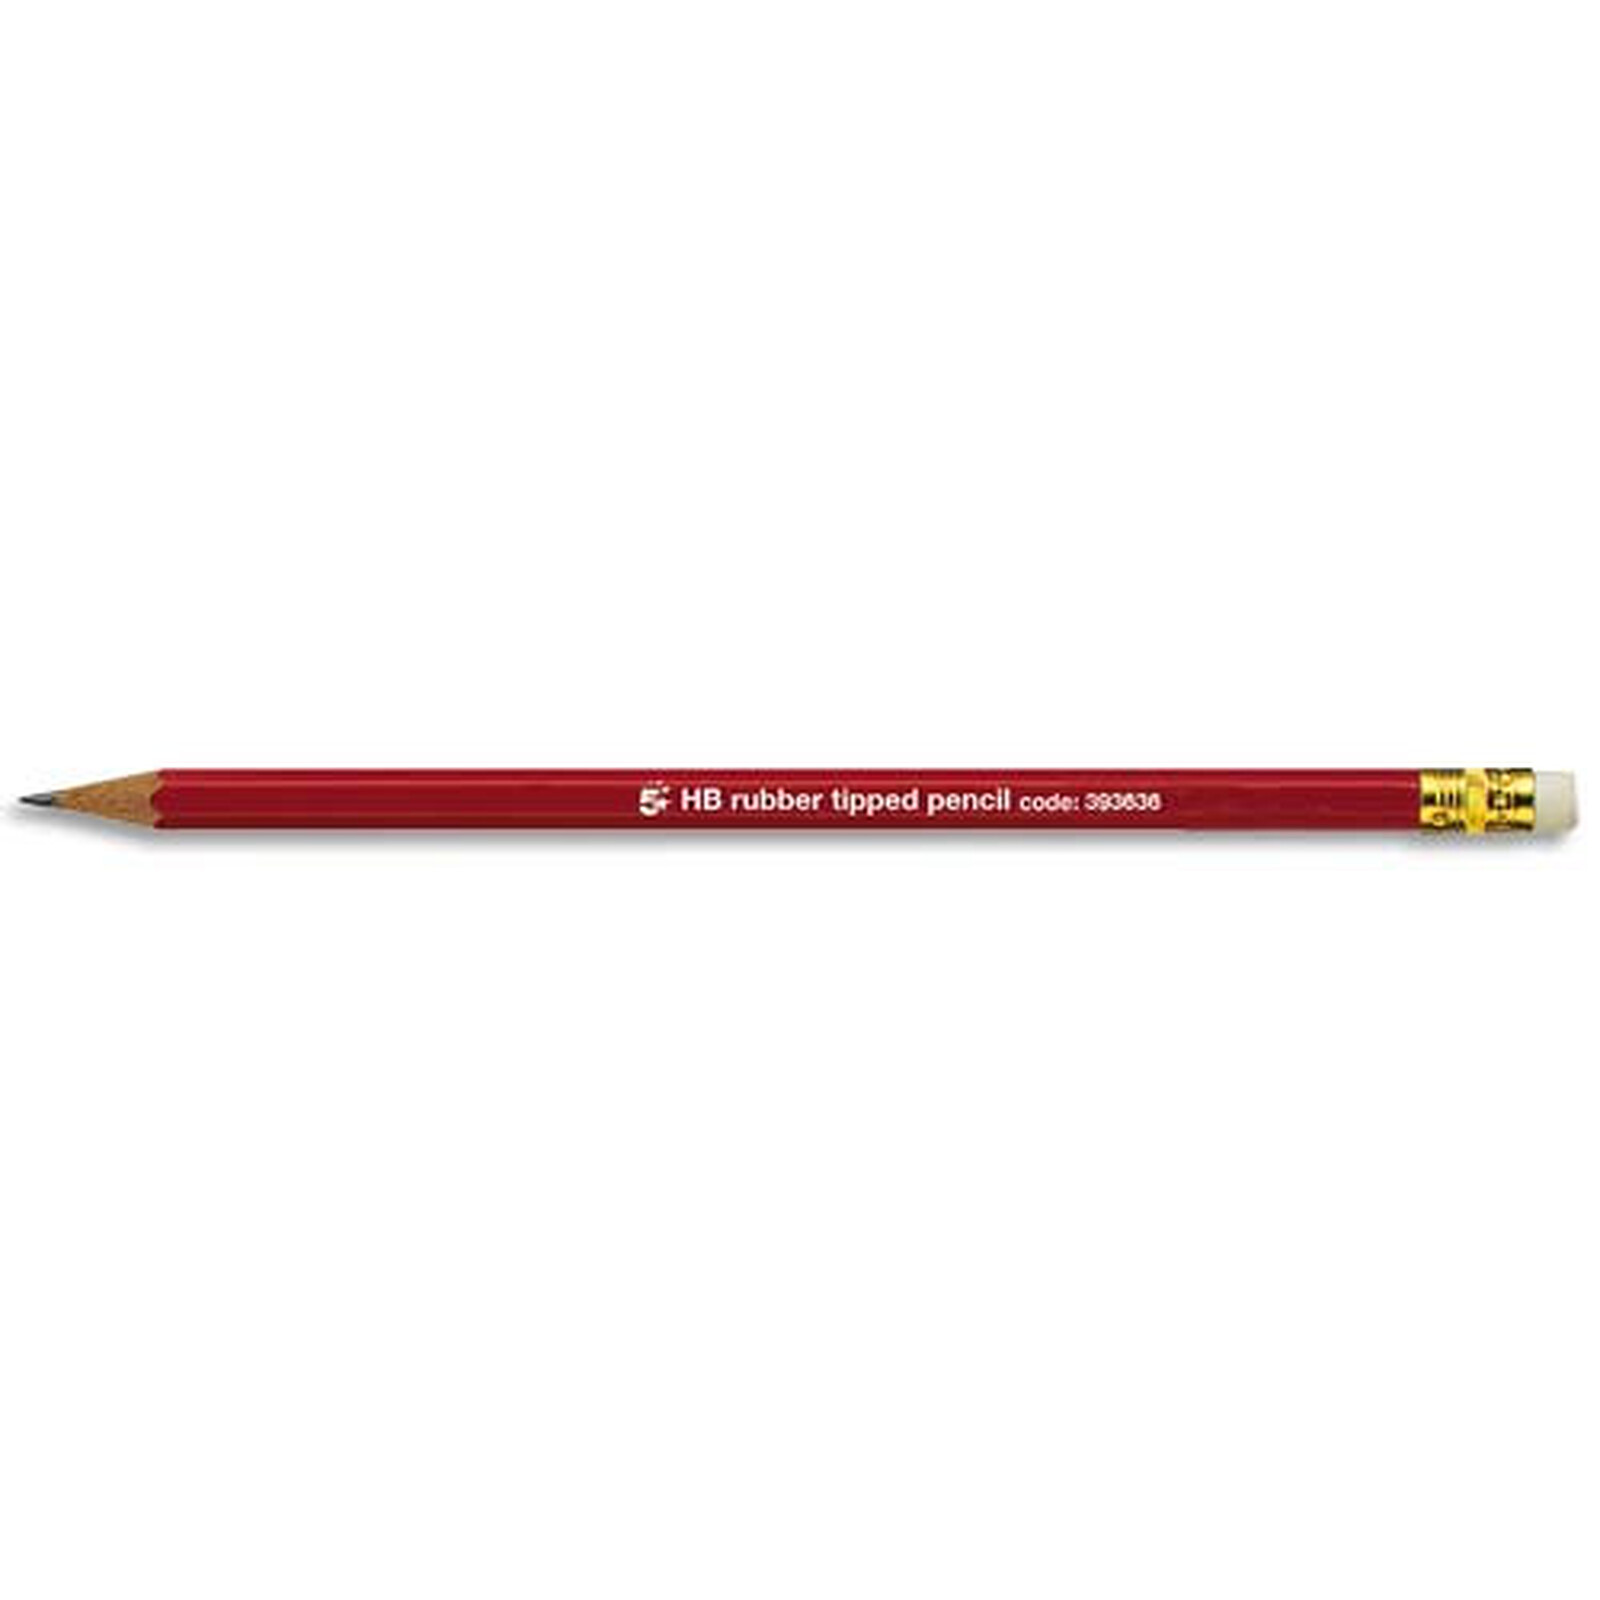 rOtring, Set de 8 Crayons en bois HB : 4 rouge, 2 bleu et 2 vert